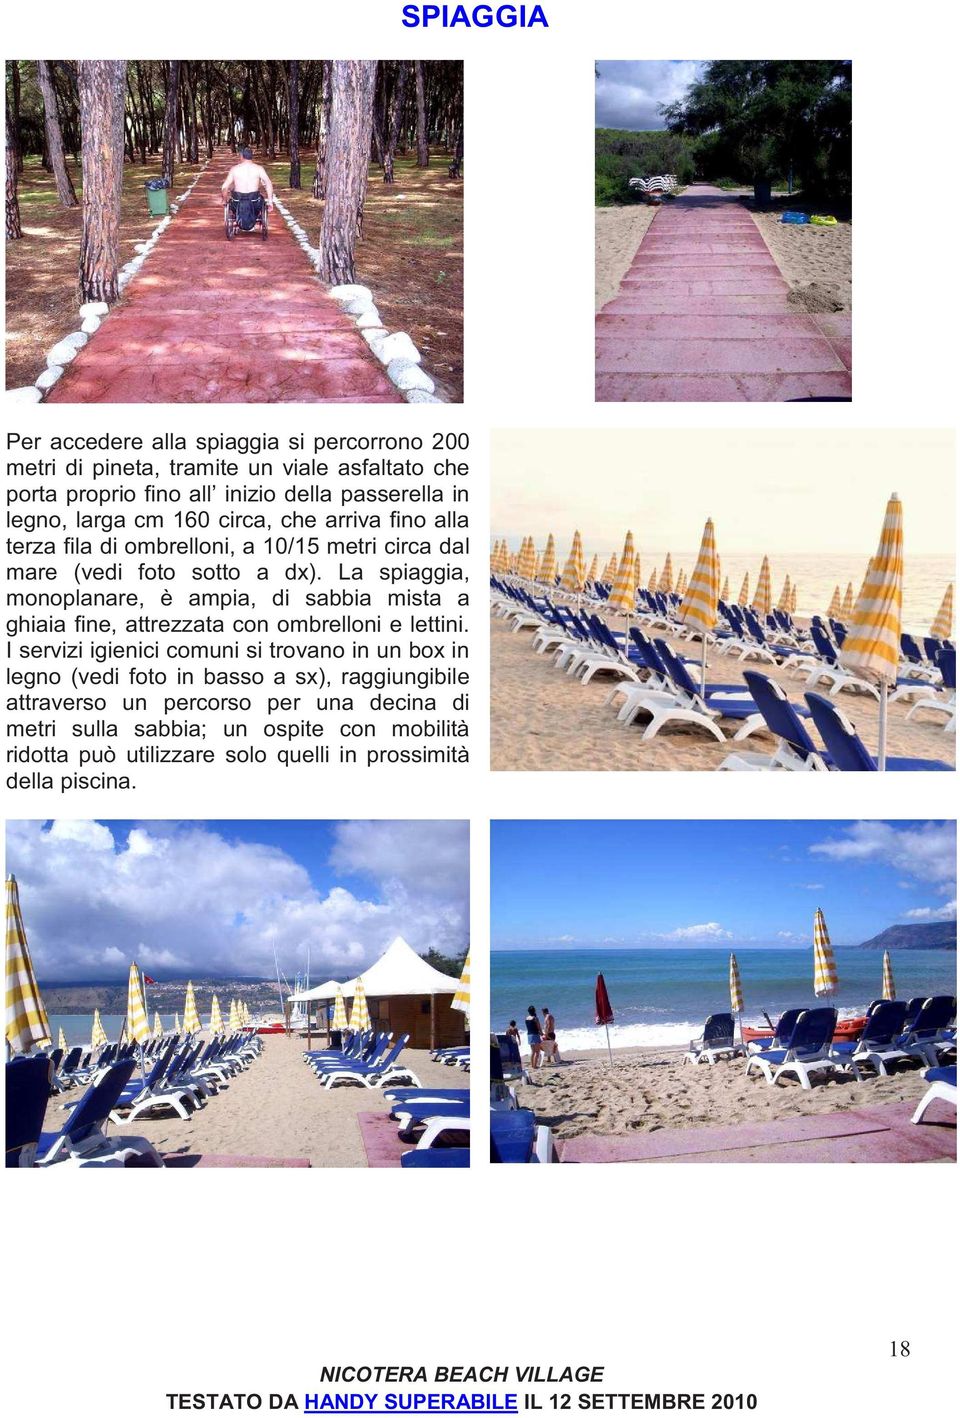 La spiaggia, monoplanare, è ampia, di sabbia mista a ghiaia fine, attrezzata con ombrelloni e lettini.